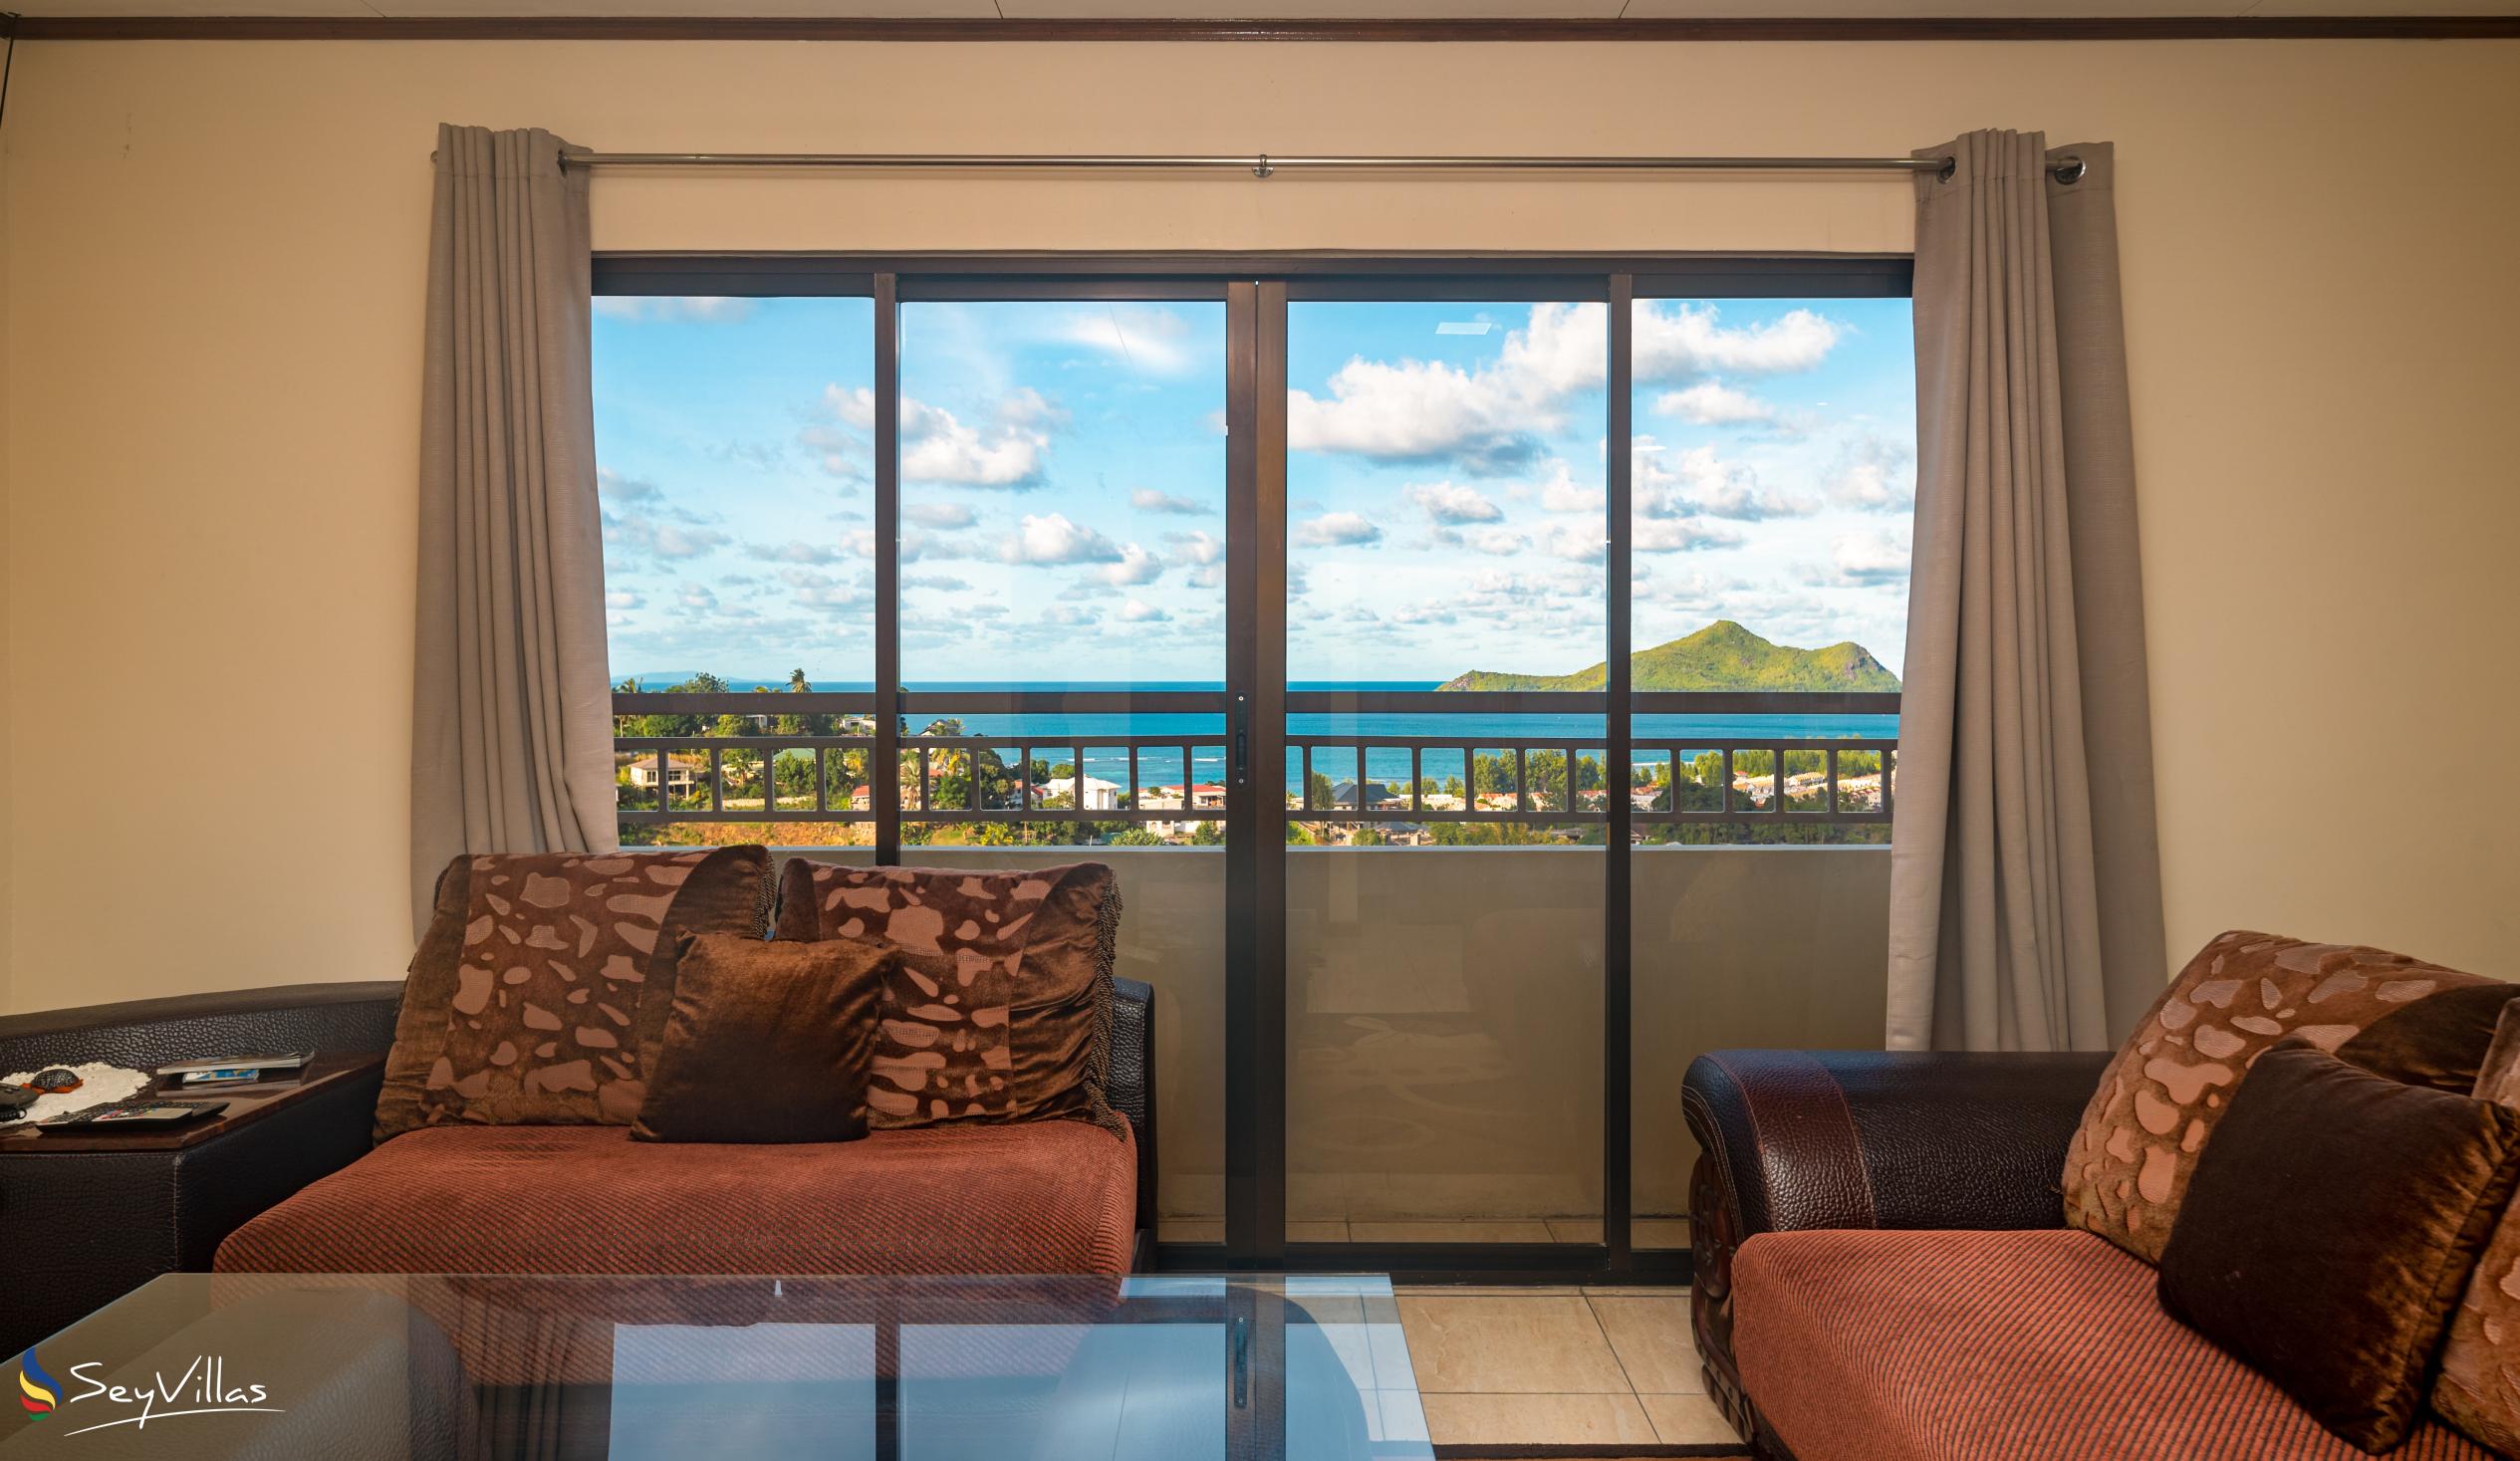 Foto 42: Maison L'Horizon - Appartamento con 2 camere Soley - Mahé (Seychelles)